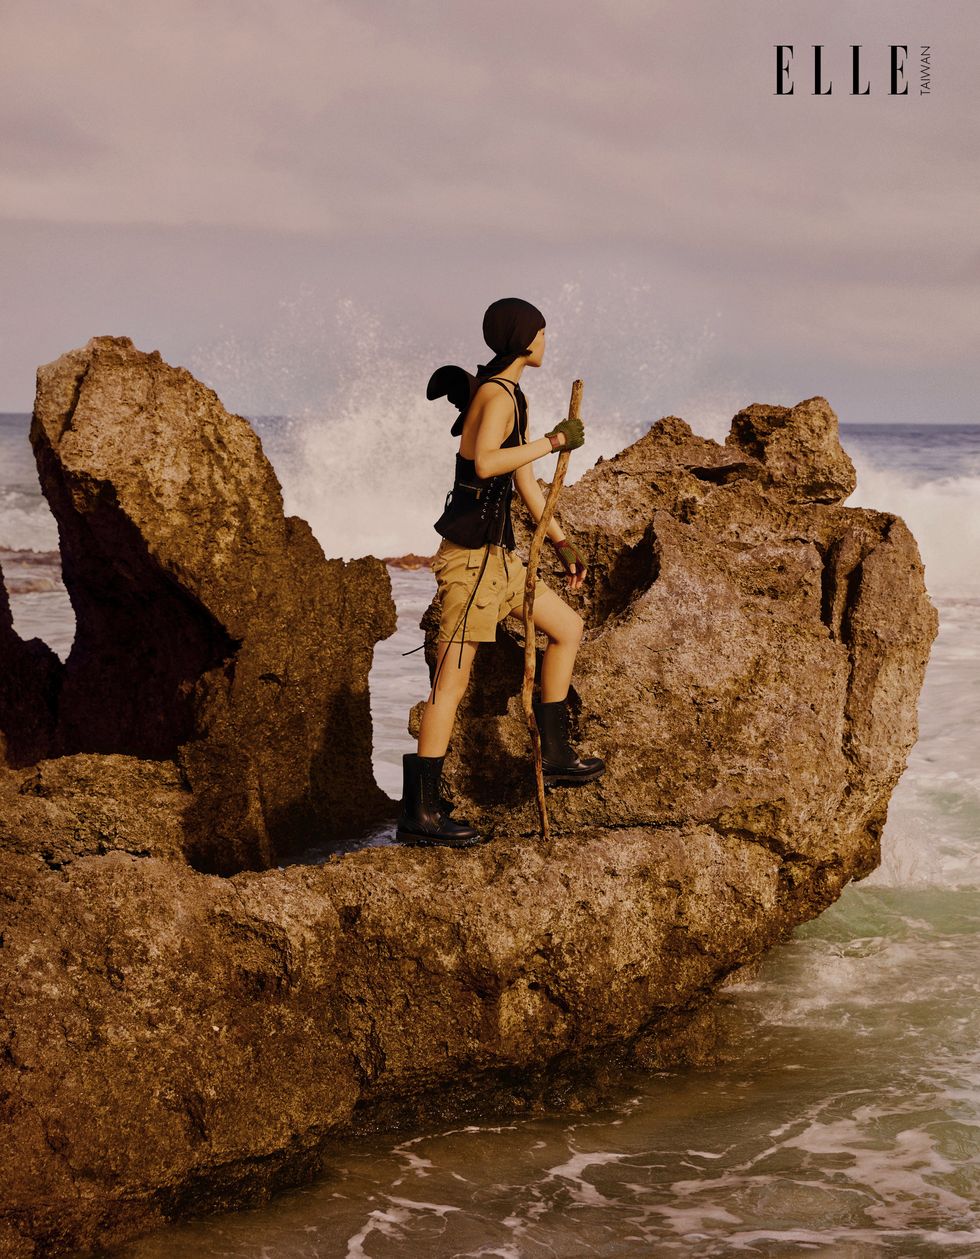 一個女人穿著背心短褲站在礁岩上